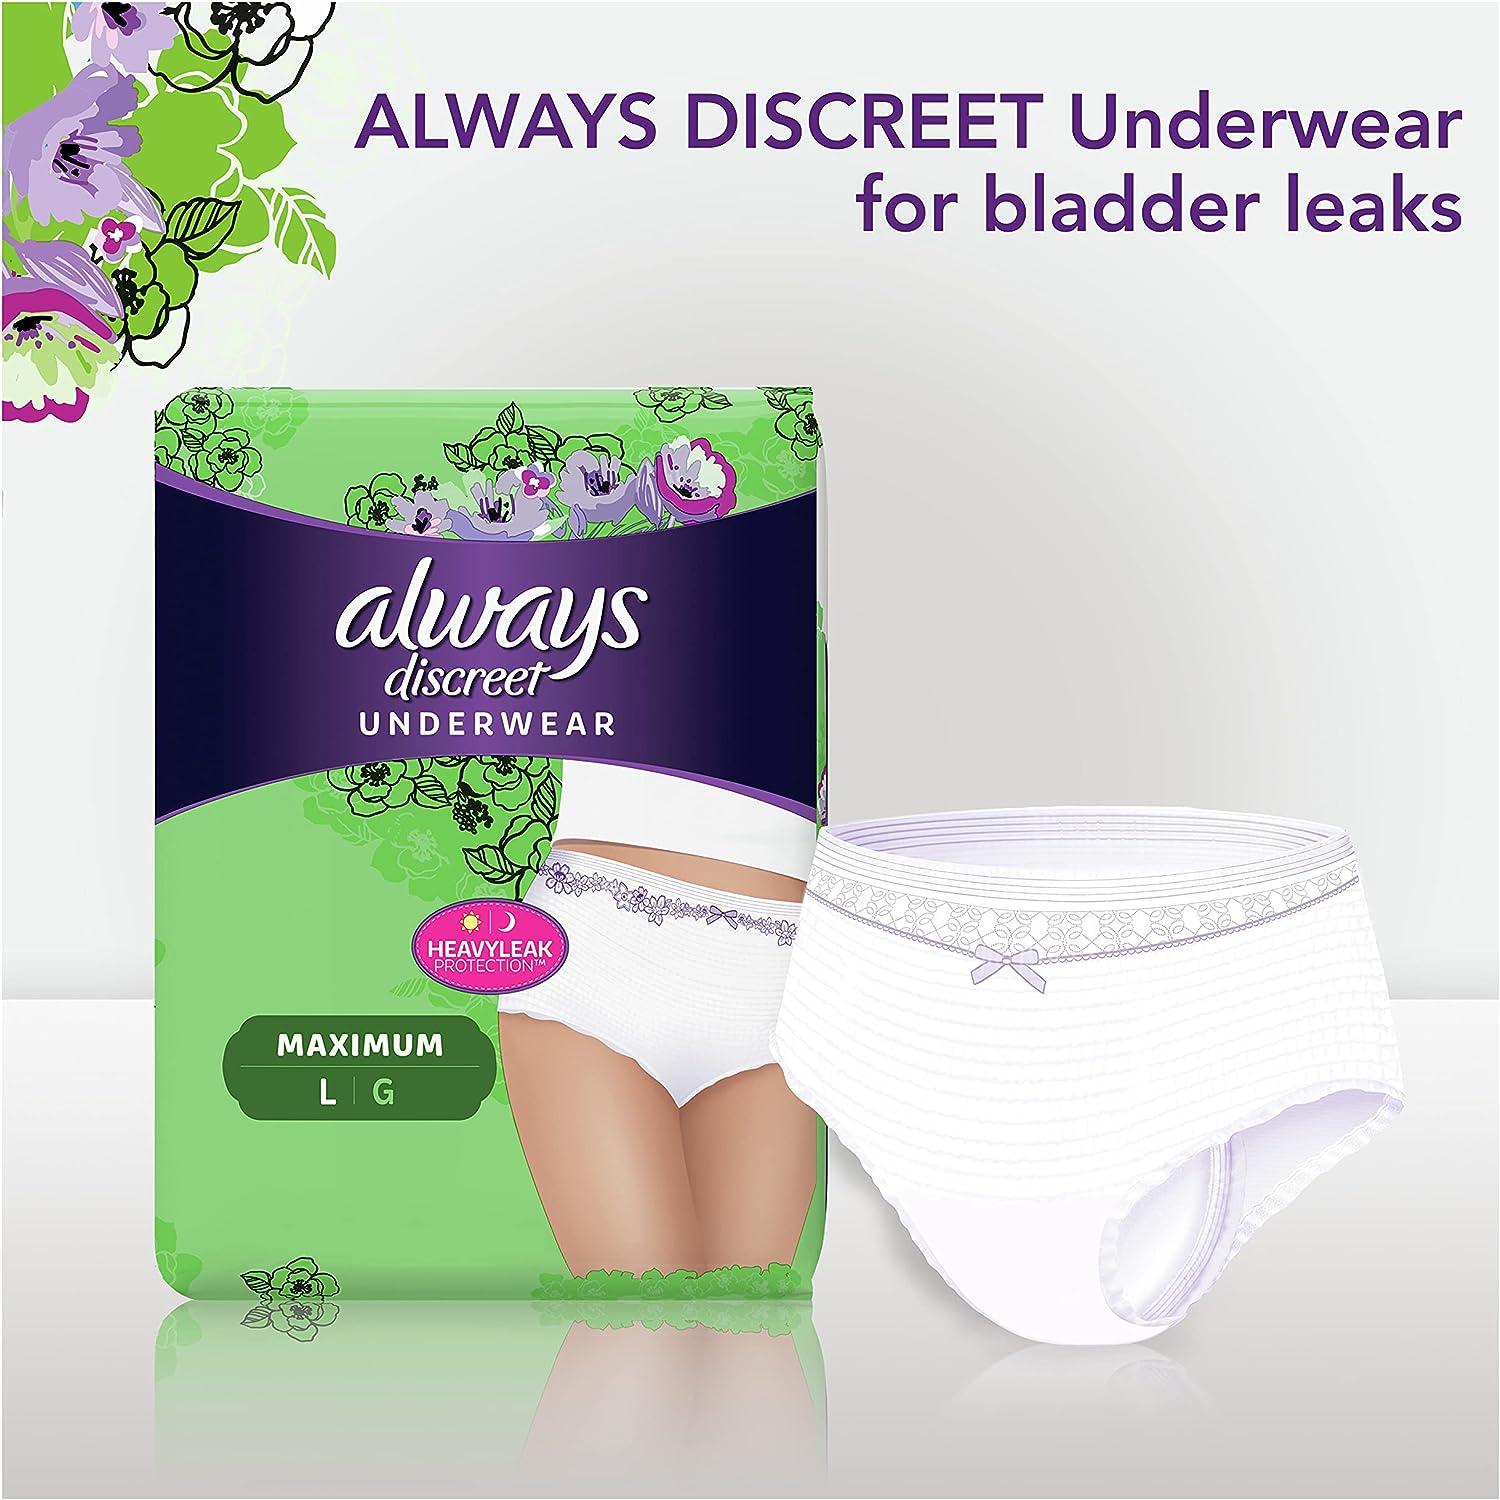 10 Best Always Discreet Boutique ideas  bladder leaks, discreet, bladder  leakage